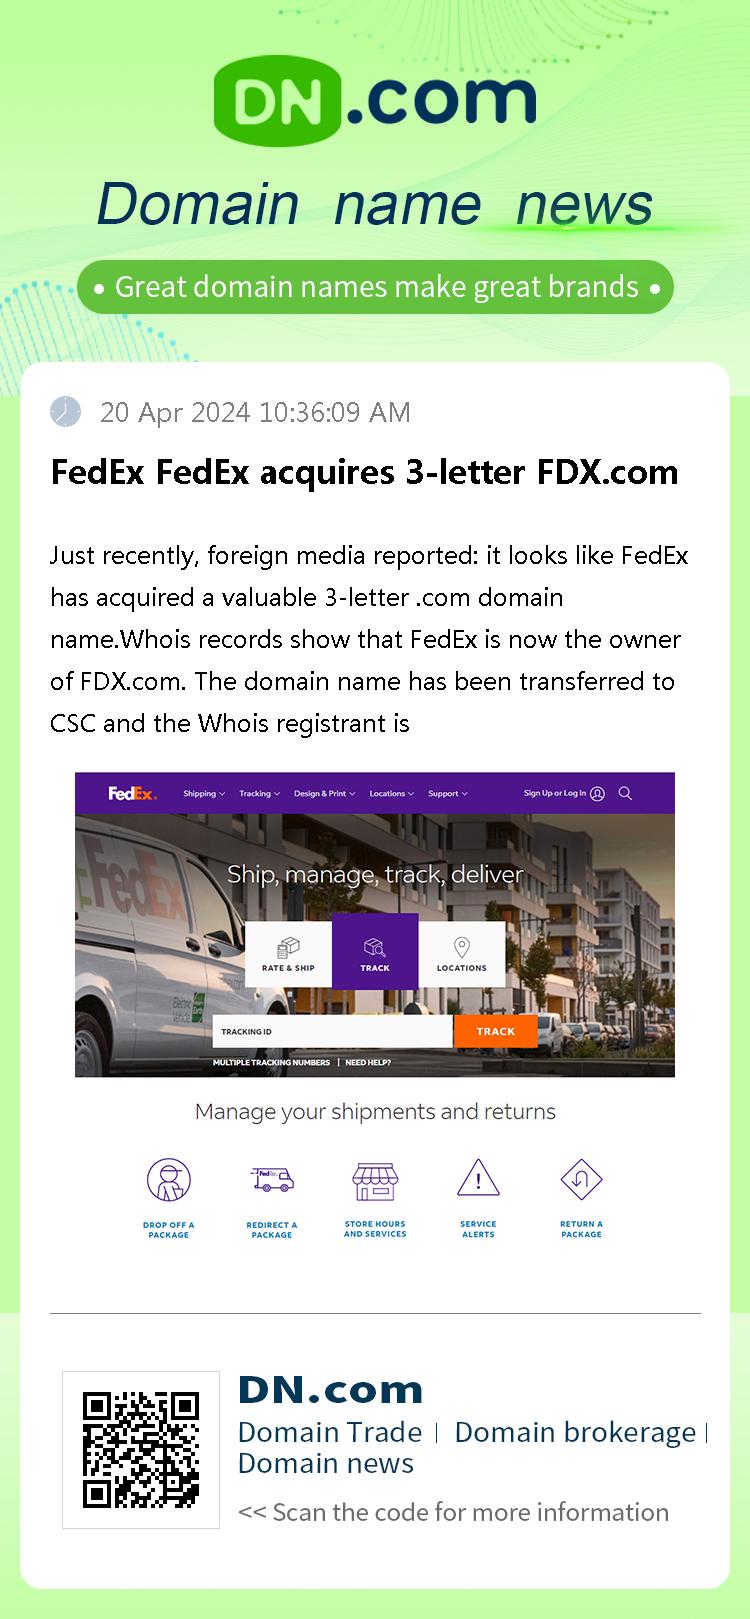 FedEx FedEx acquires 3-letter FDX.com